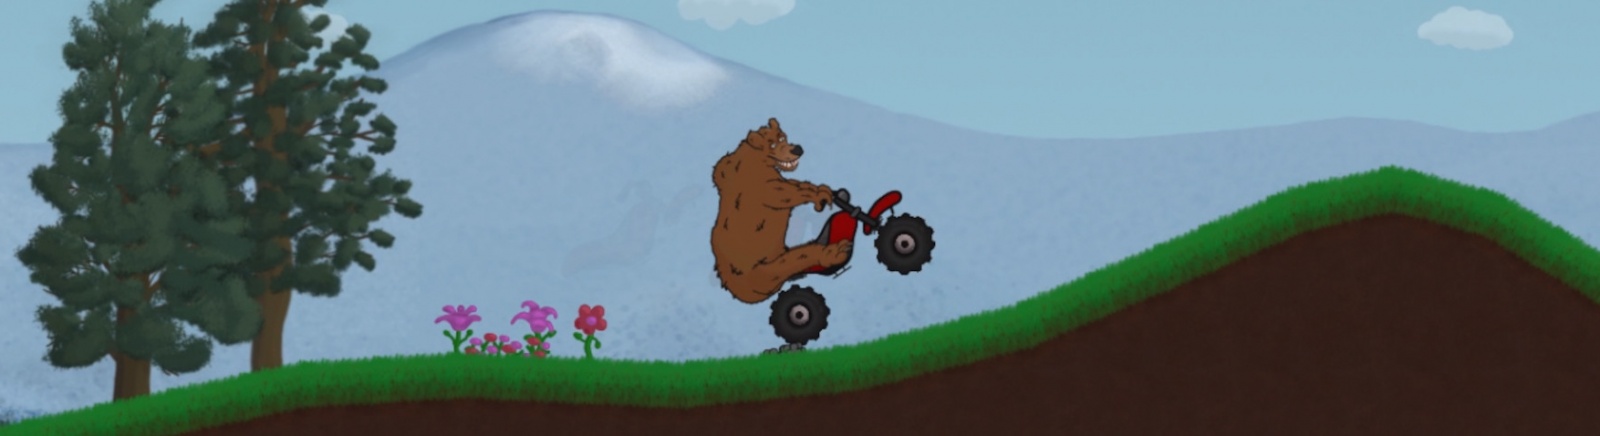 Дата выхода Bearcycle  на PC и Linux в России и во всем мире